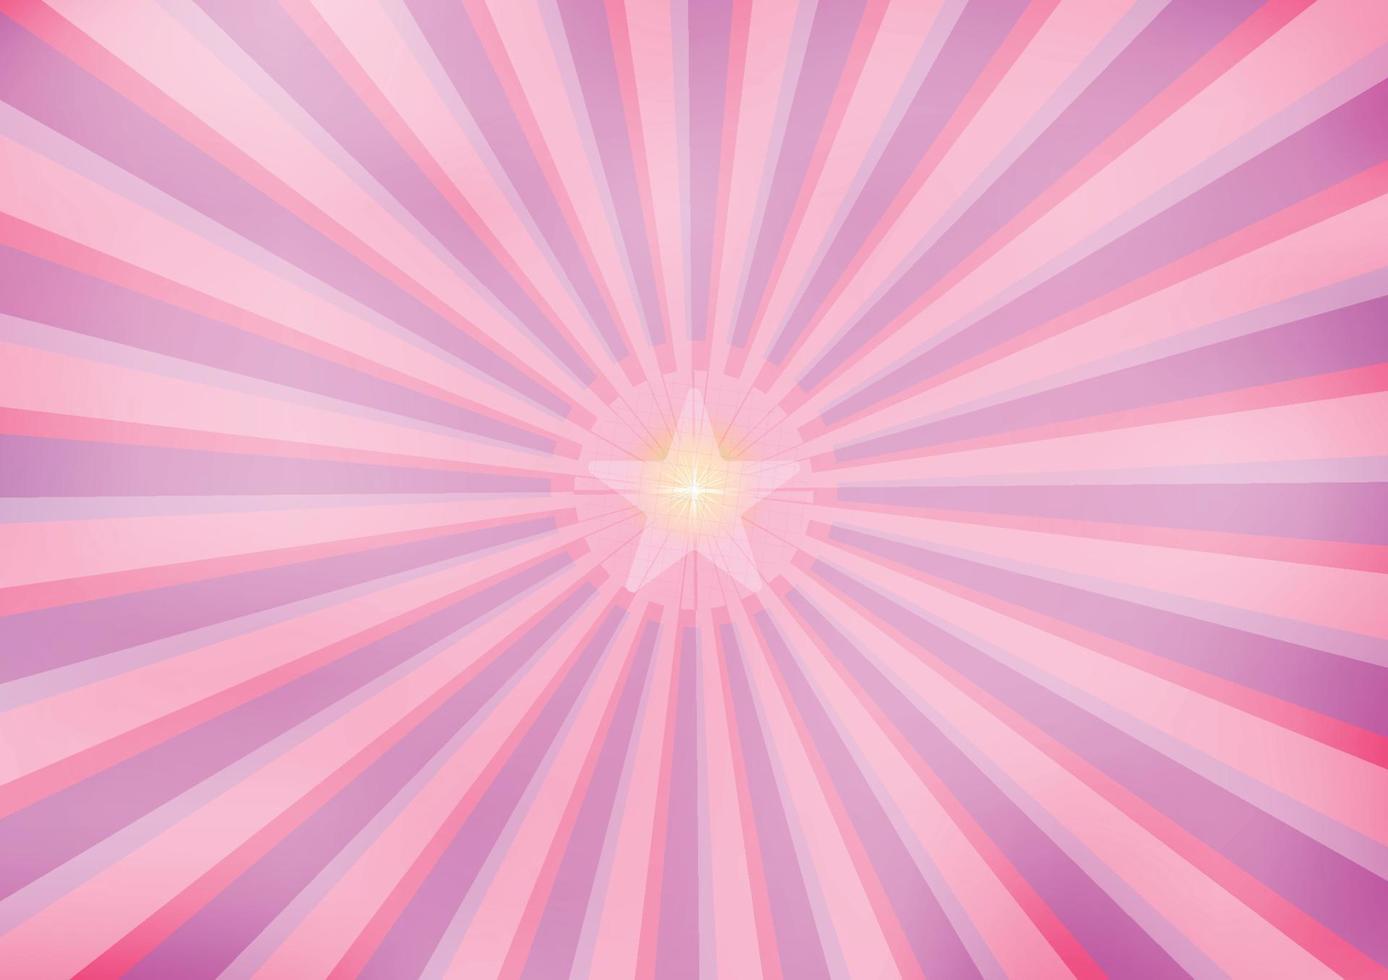 rayons roses ligne rayon de soleil brillant arrière-plans abstraits texture papier peint illustration vectorielle eps10 06272021 vecteur